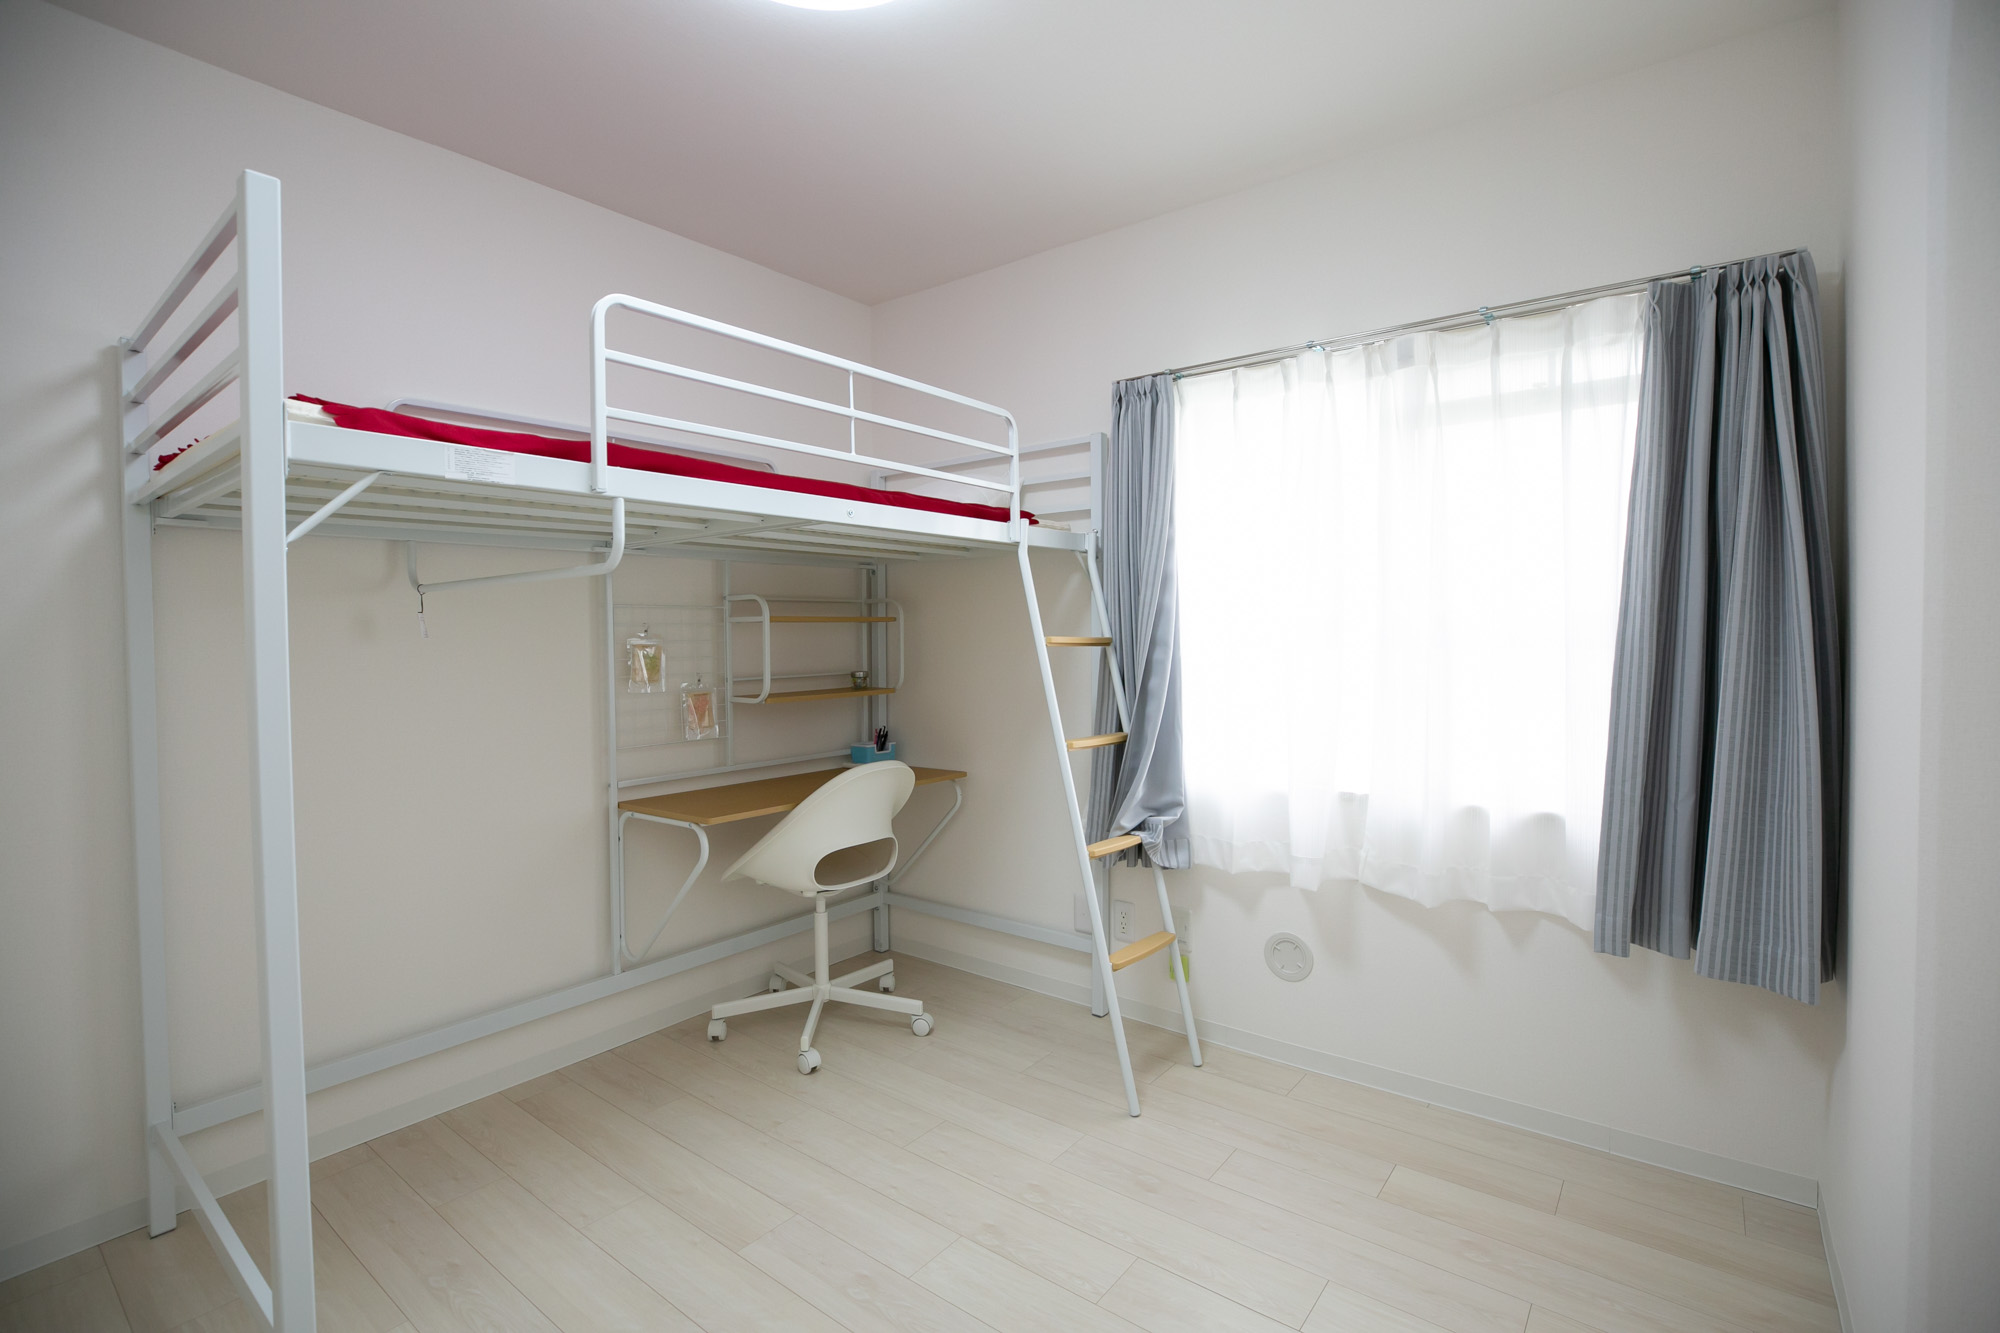 こちらは中学生の女の子のお部屋。ロフトベッドを配置して、よりスペースを有効活用するイメージです。